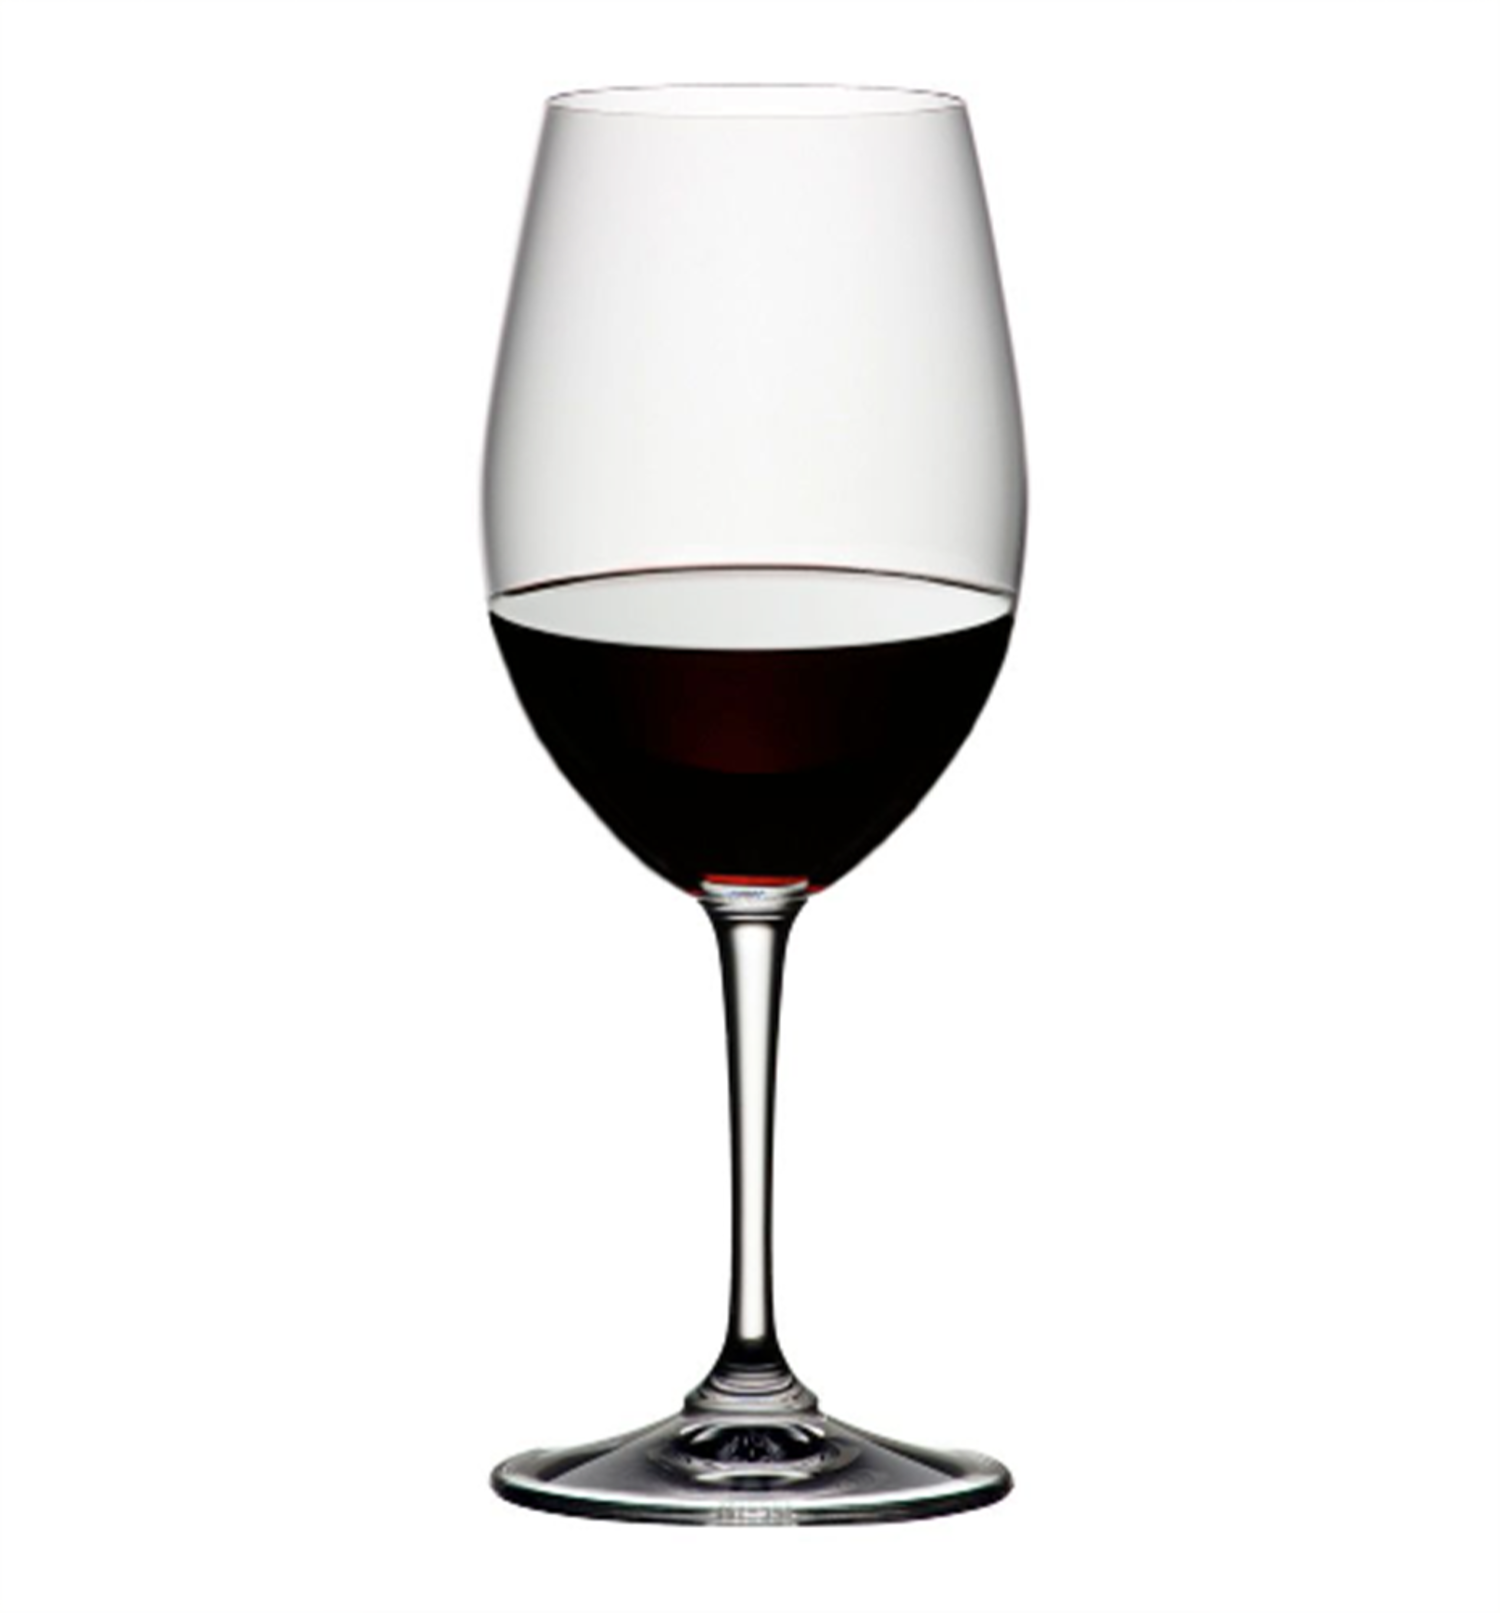 https://cdn.shoplightspeed.com/shops/633206/files/53211421/1500x4000x3/riedel-riedel-degustazione-red-wine-glass-0489-0.jpg